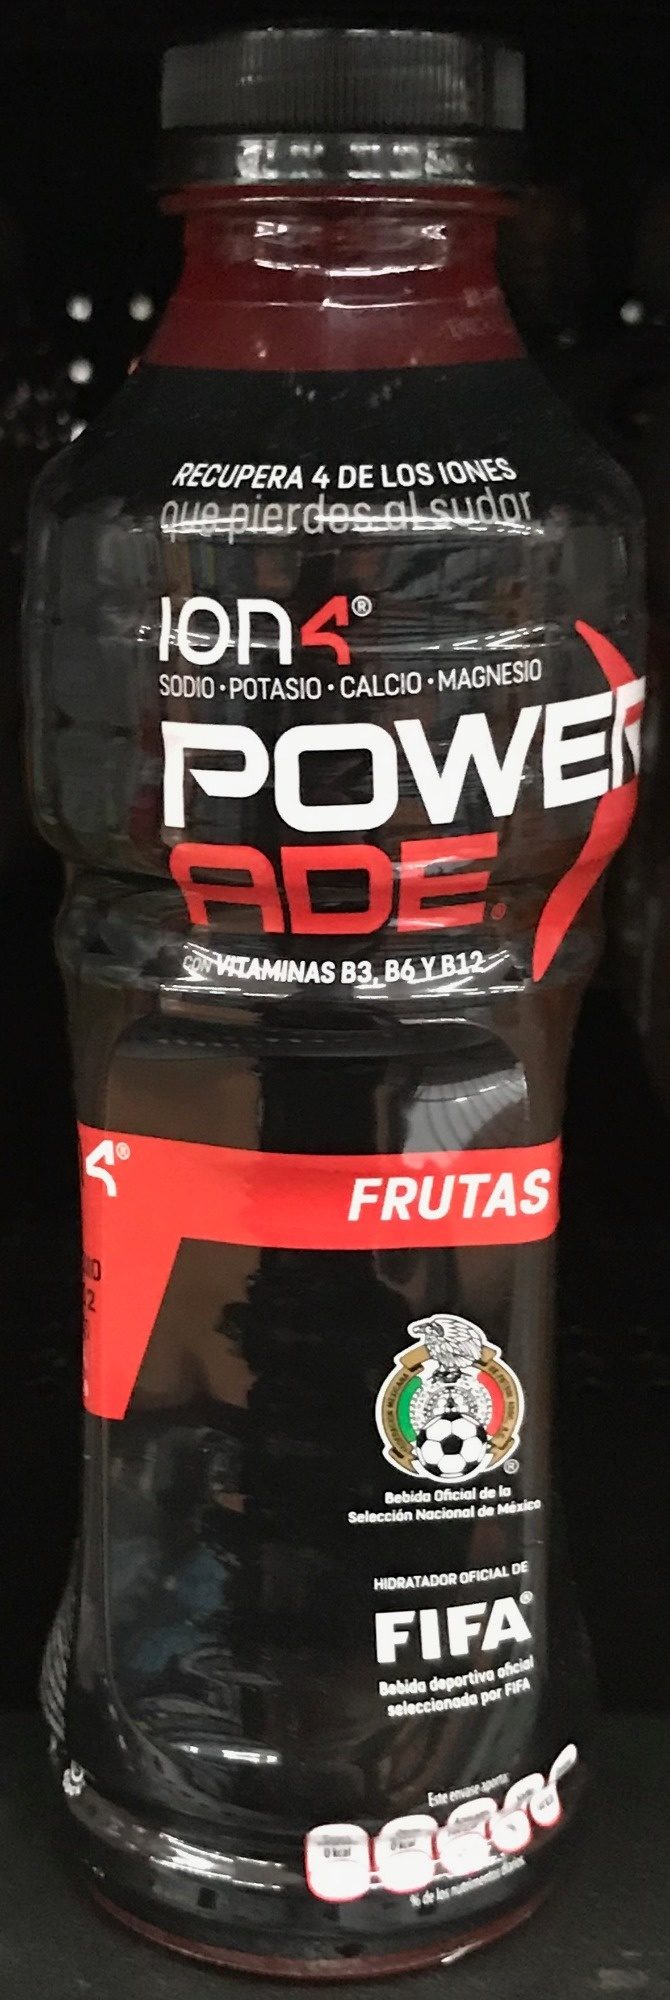 Powerade Ion 4 Frutas - Producto